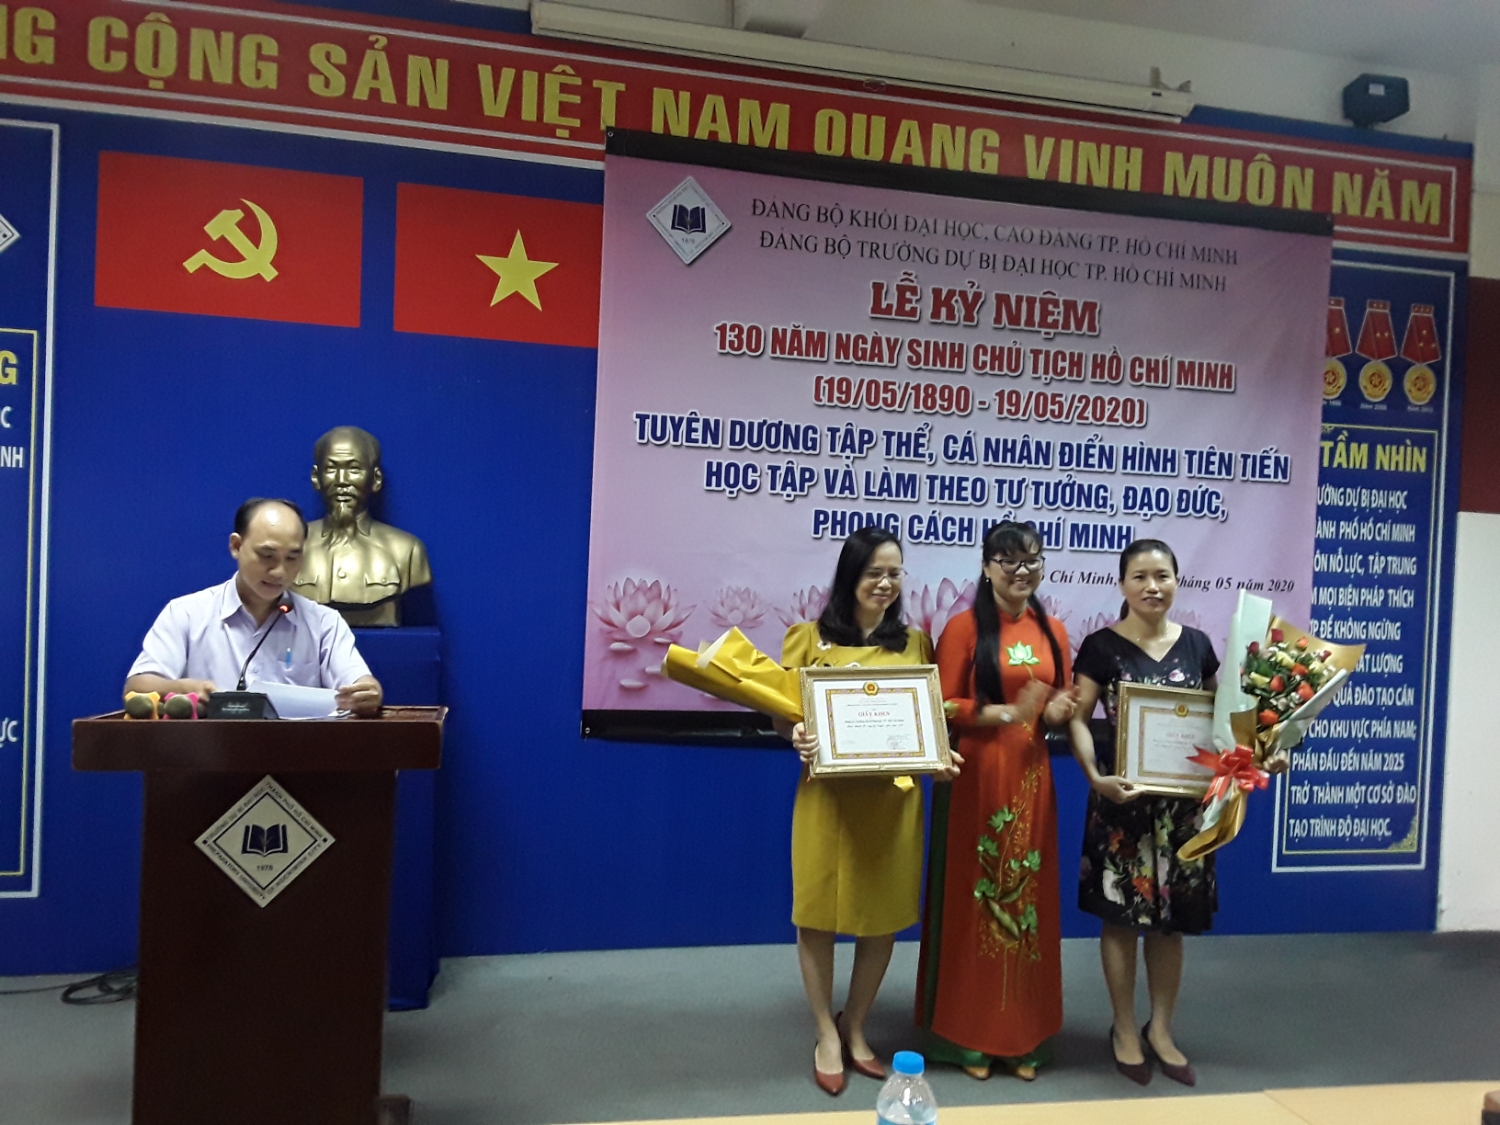 Đồng chí Đặng Thuỳ Khánh Vân, trao Giấy khen của Đảng uỷ Khối Đại học, Cao đẳng TP. Hồ Chí Minh cho Đảng bộ Trường hoàn thành tốt Tông tác Tuyên giáo và Công tác Văn phòng năm 2019